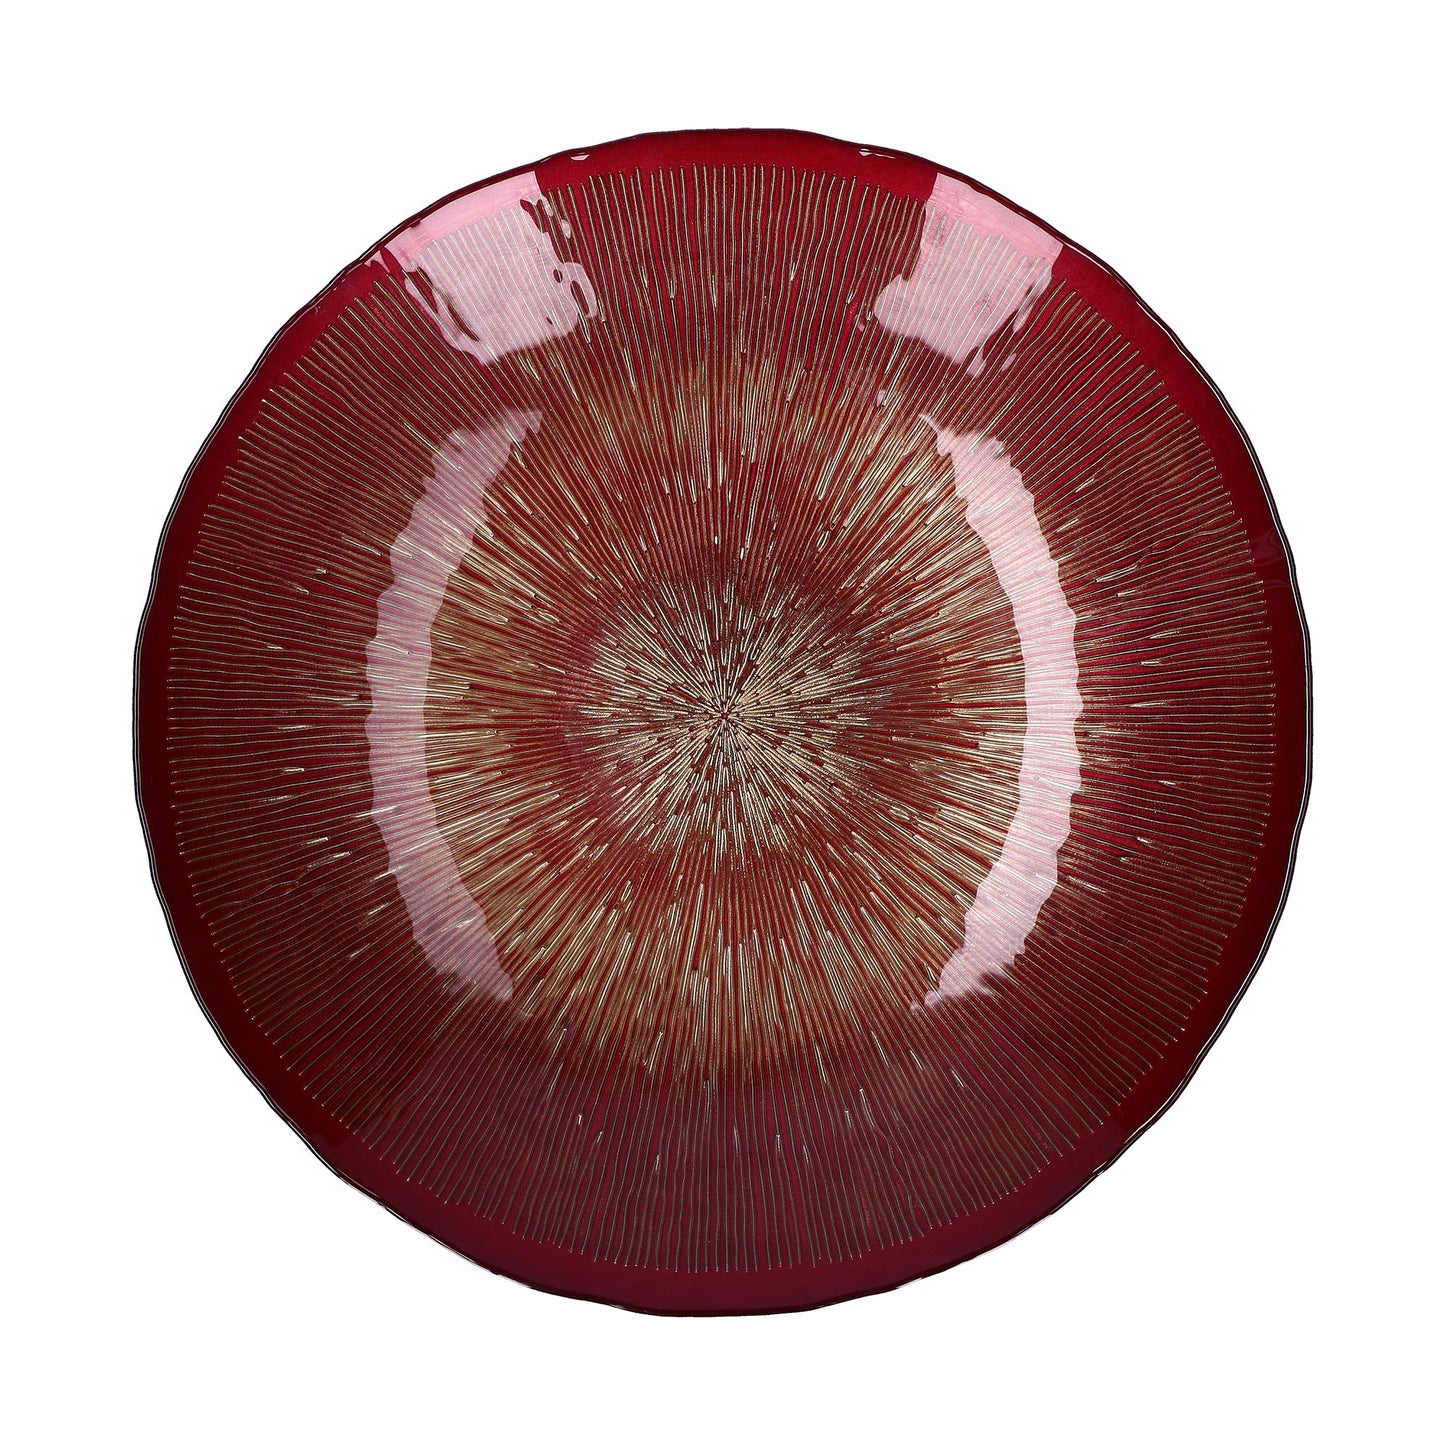 Centrotavola in vetro di colore rosso e oro. Dimensioni: Ø 40 cm. In negozio e online su tuttochic.it